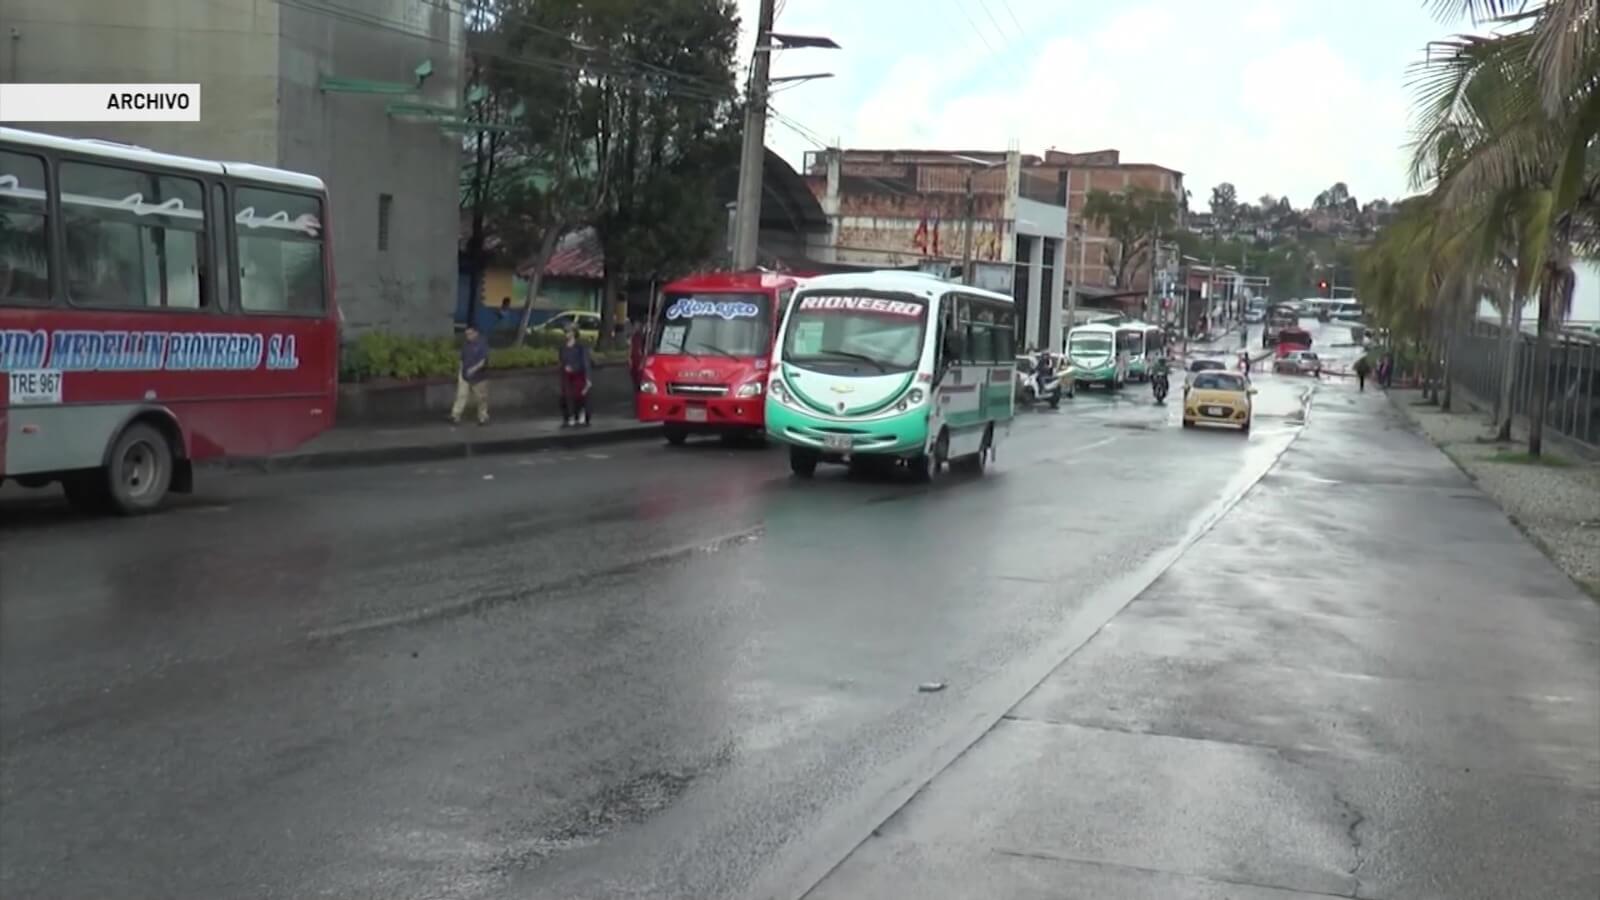 Autorizan aumento de $200 en transporte público de Rionegro